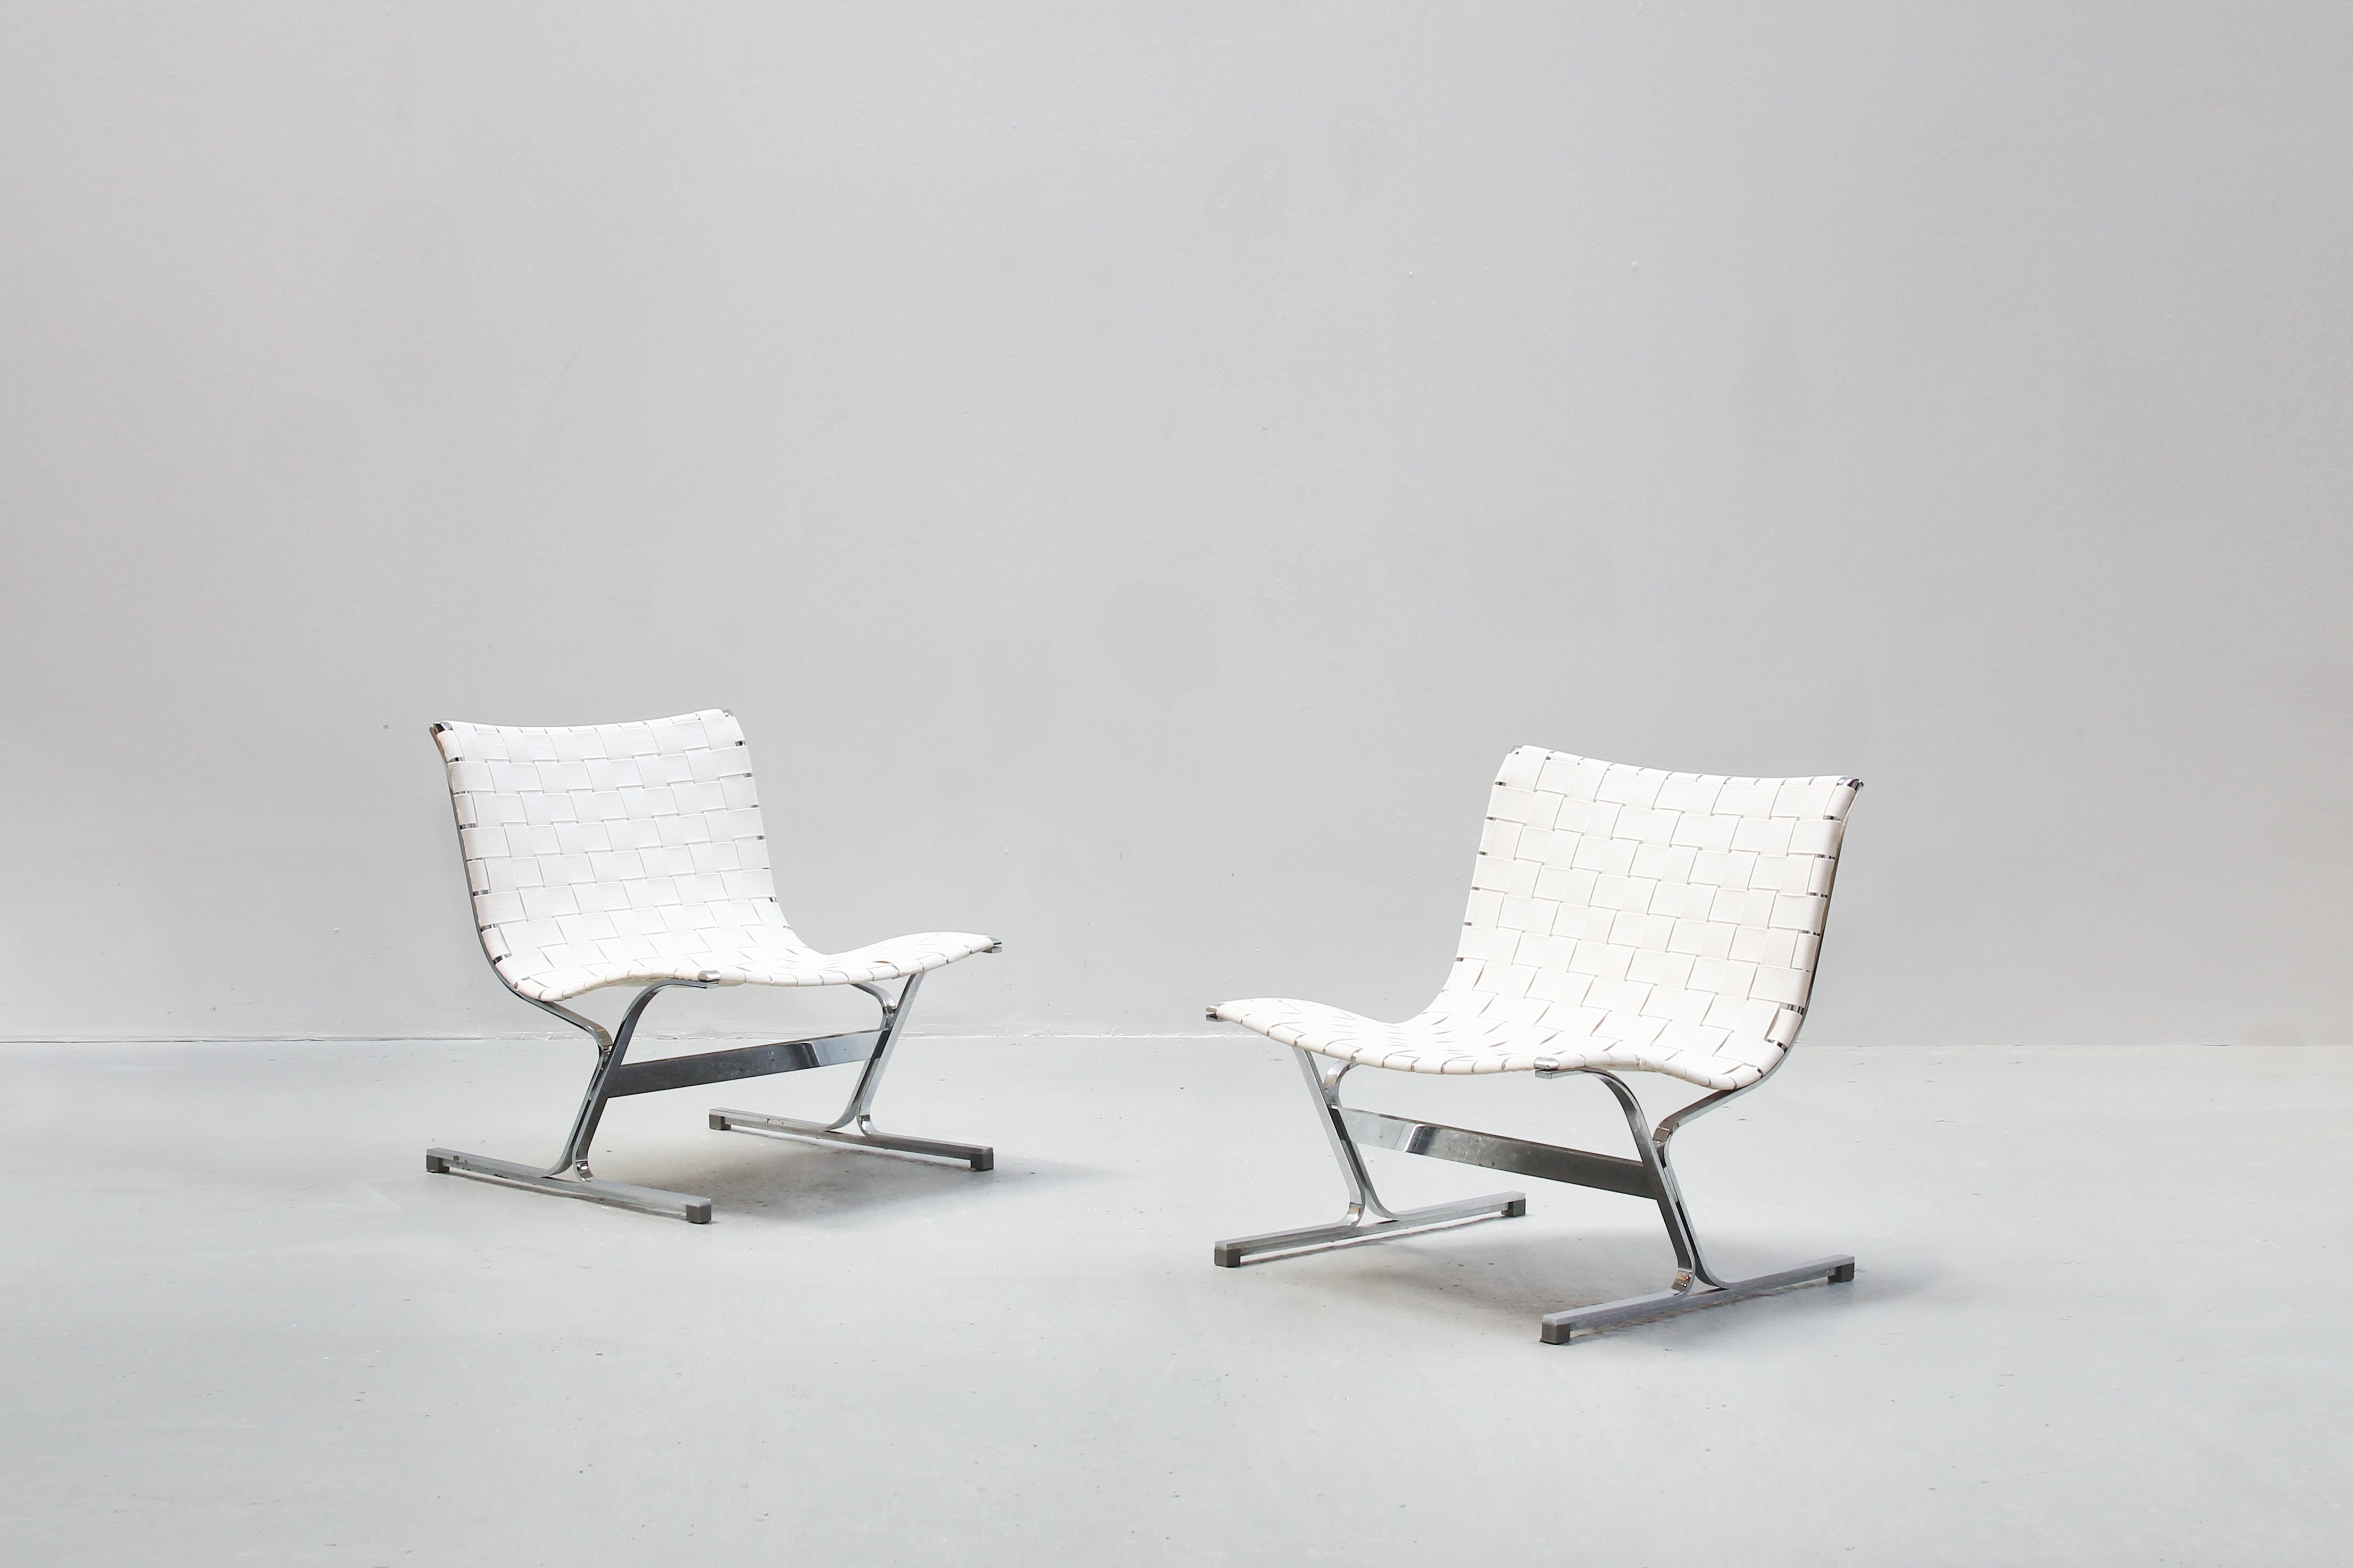 Une paire de magnifiques chaises longues conçues par Ross Littell et produites par ICF, Italie, dans les années 1970.
Les deux chaises sont recouvertes de ceintures en tissu blanc et sont en très bon état avec juste quelques traces